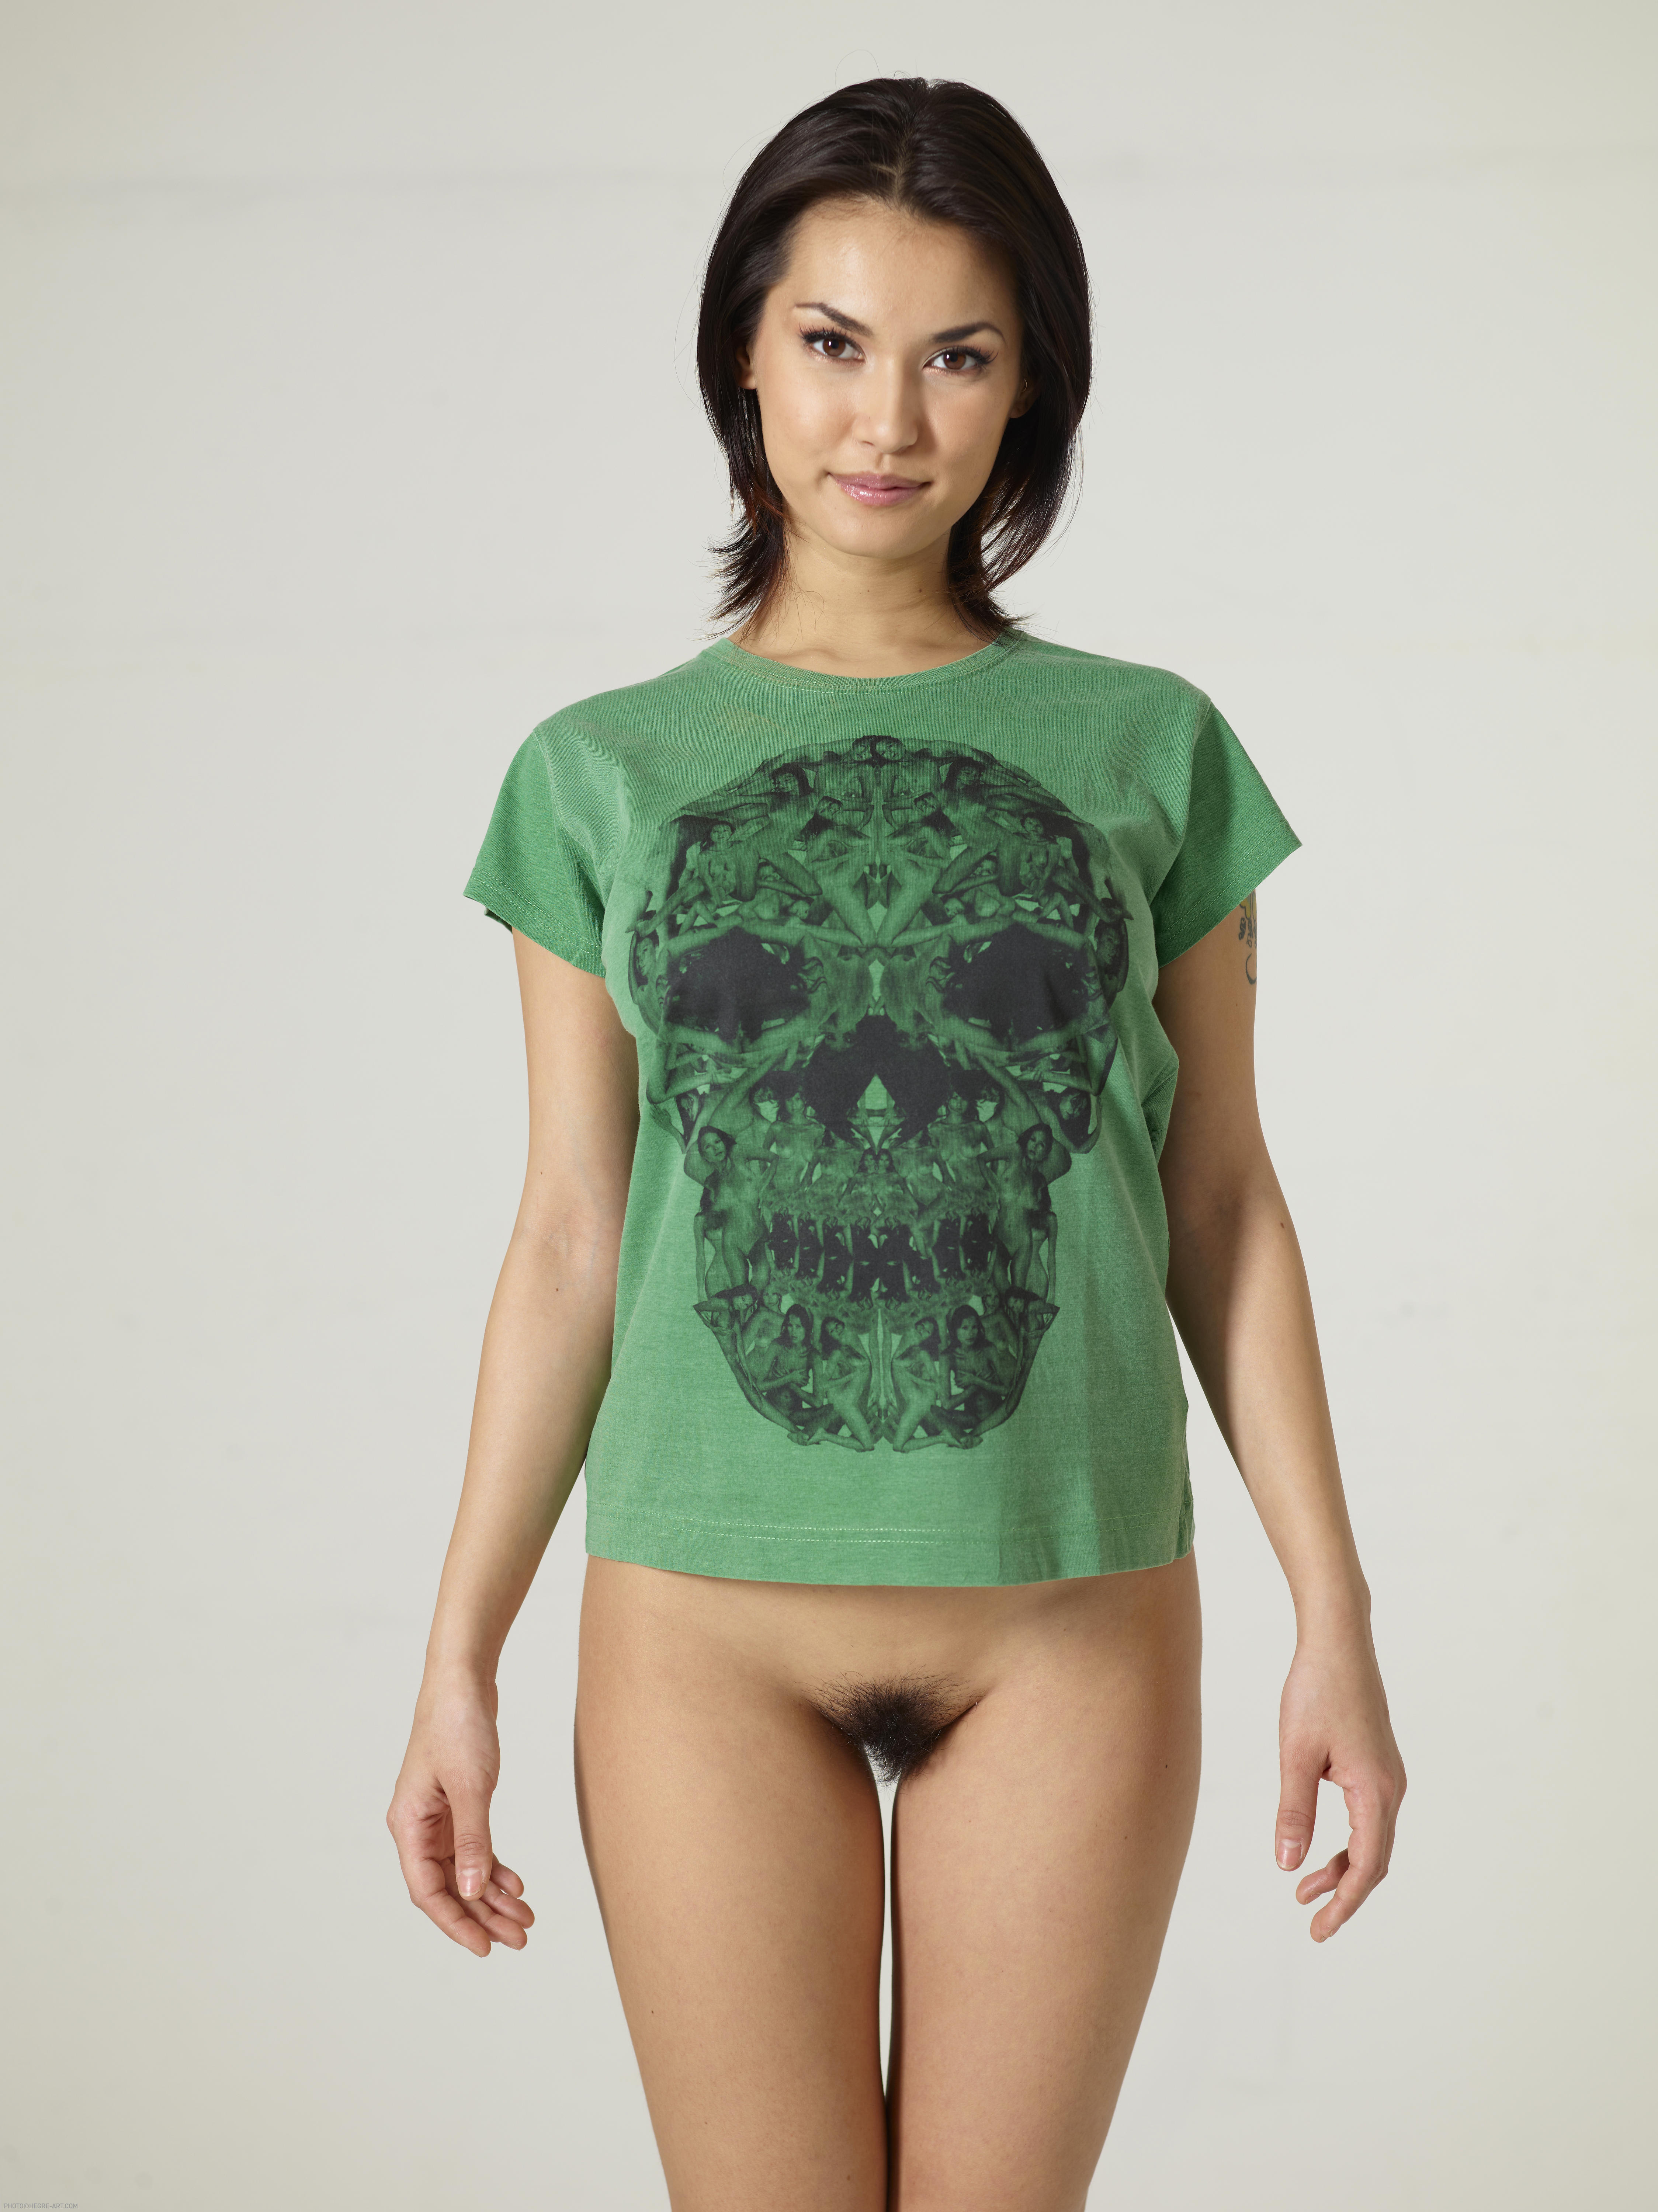 Maria Ozawa Luba Skull T shirt 2011 03 22 044 xxxl